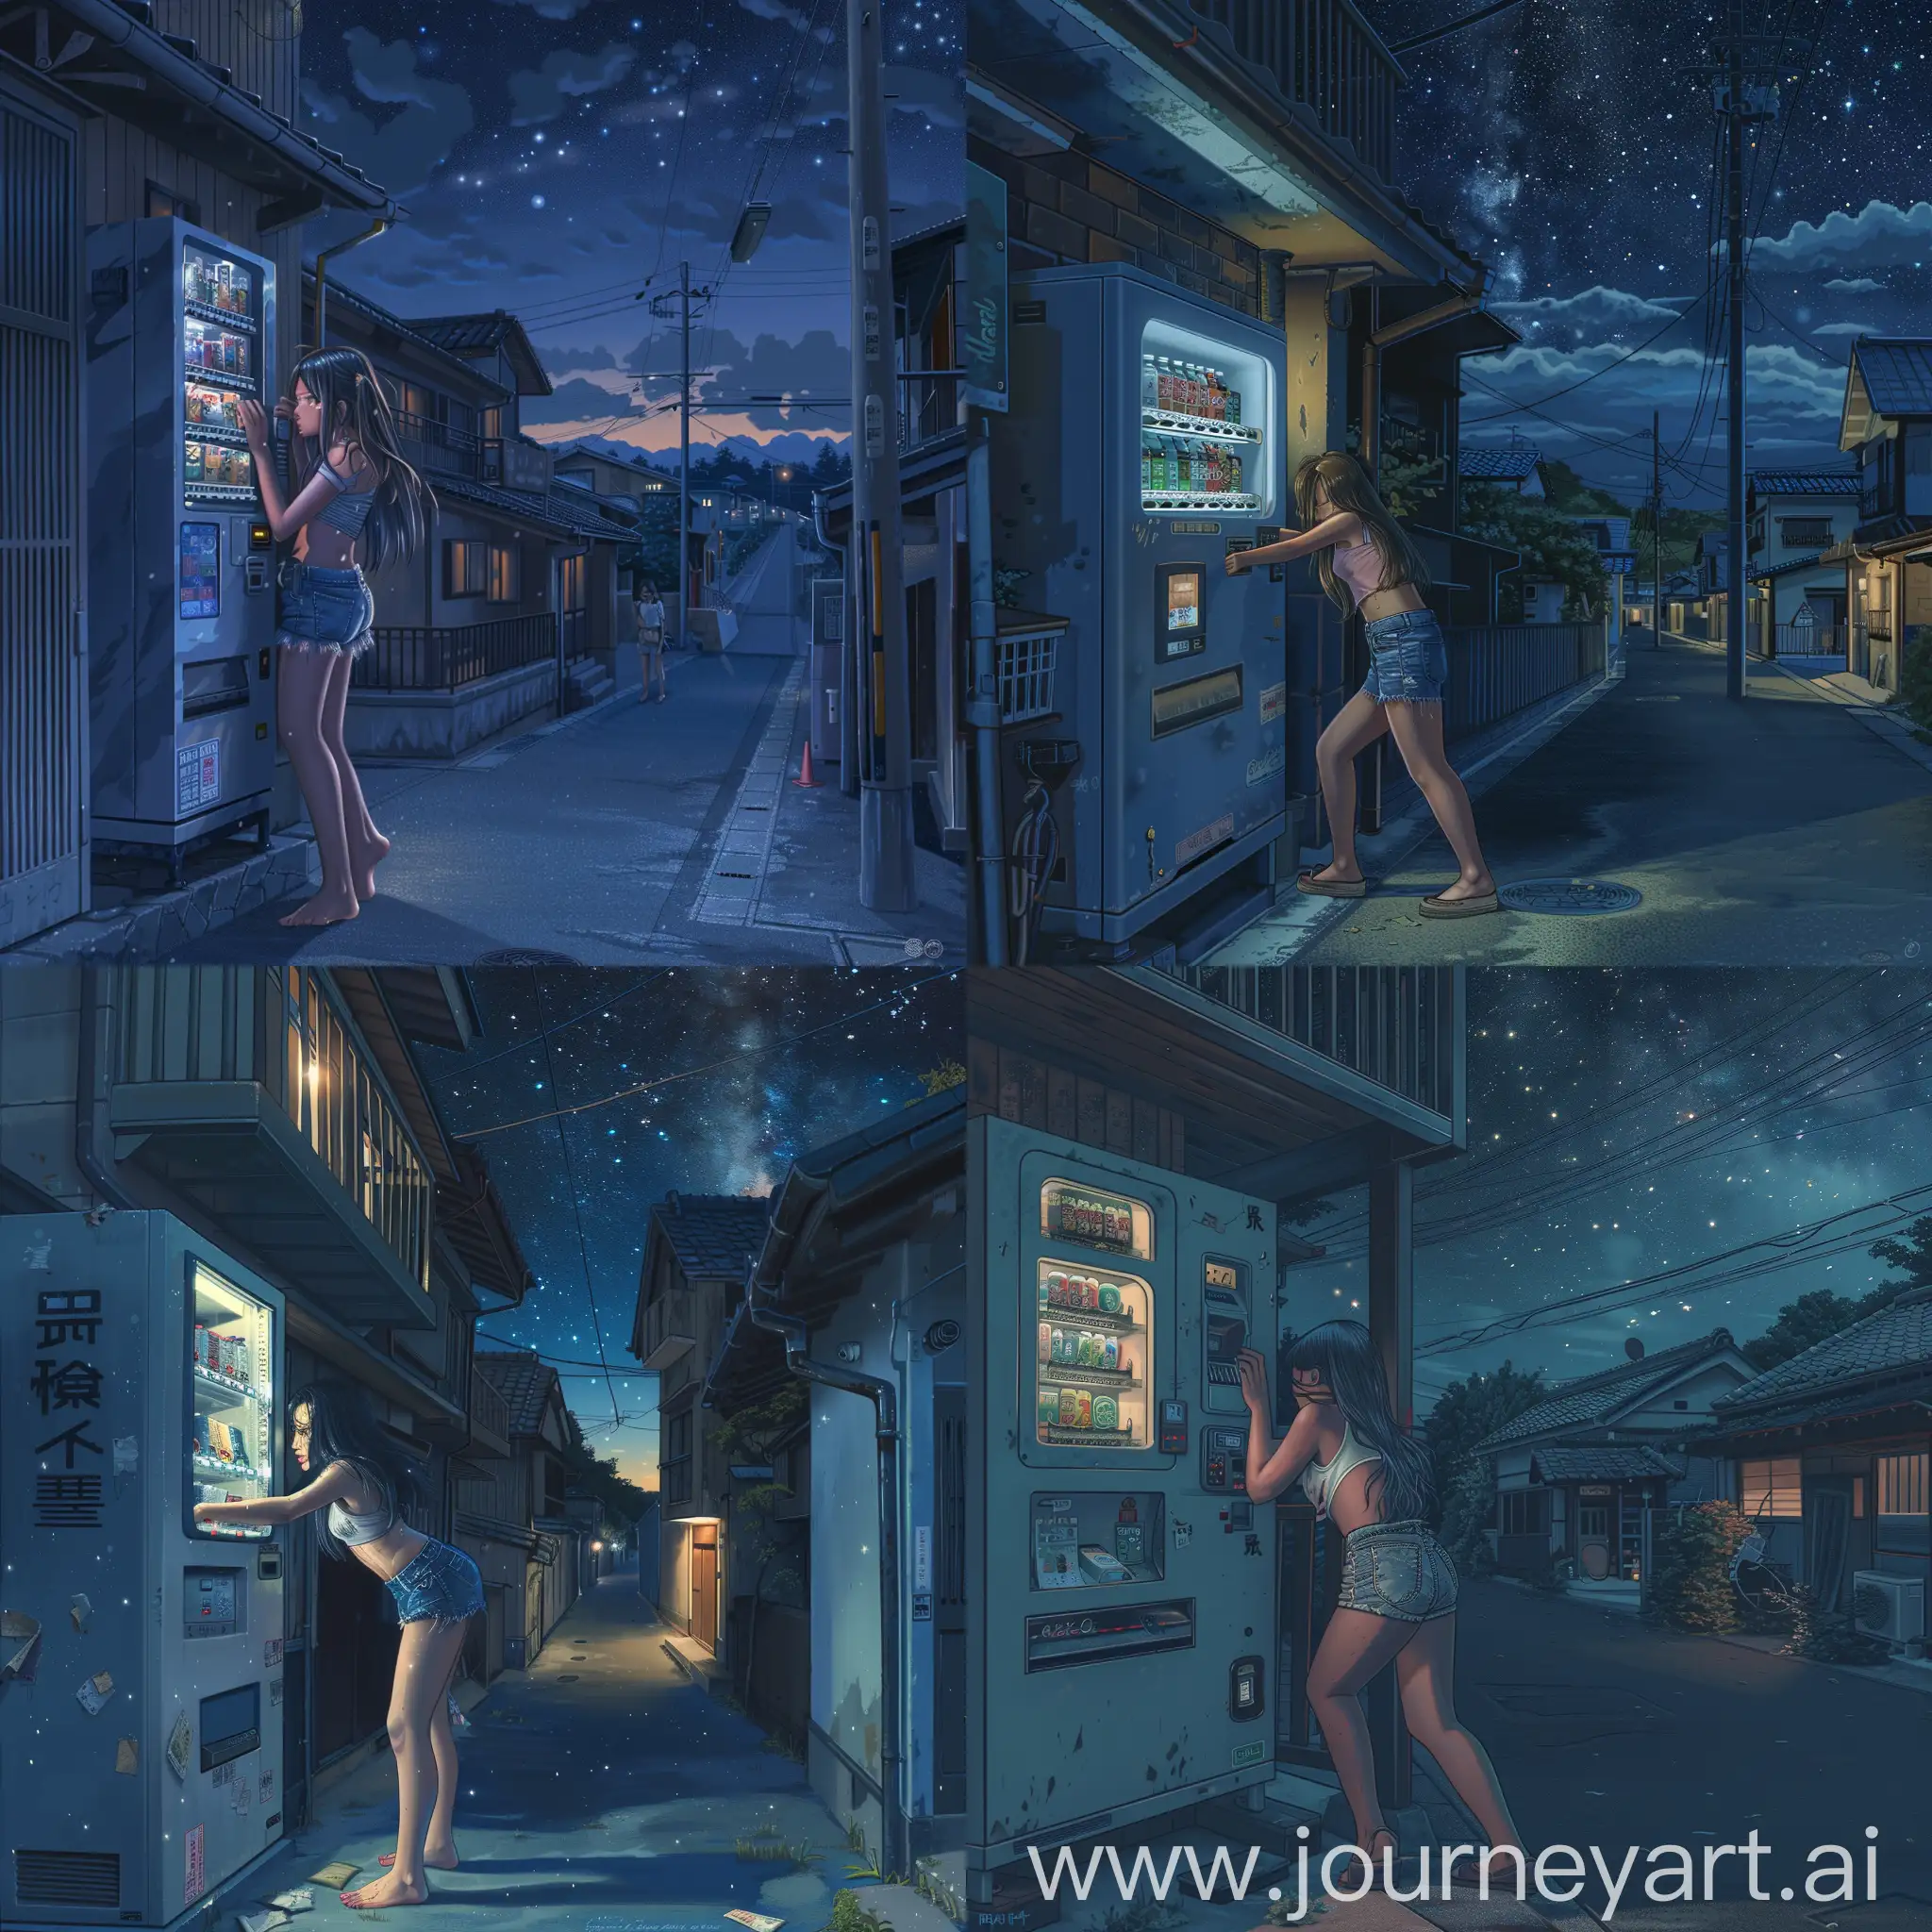 детализированная иллюстрация, cgi, компьютерная графика, 2d, ночное токио, девушка прячется под балконом рядом торговый автомат одетая в джинсовые шорты, пустынная улица, ночь, звездное небо, небольшие домики